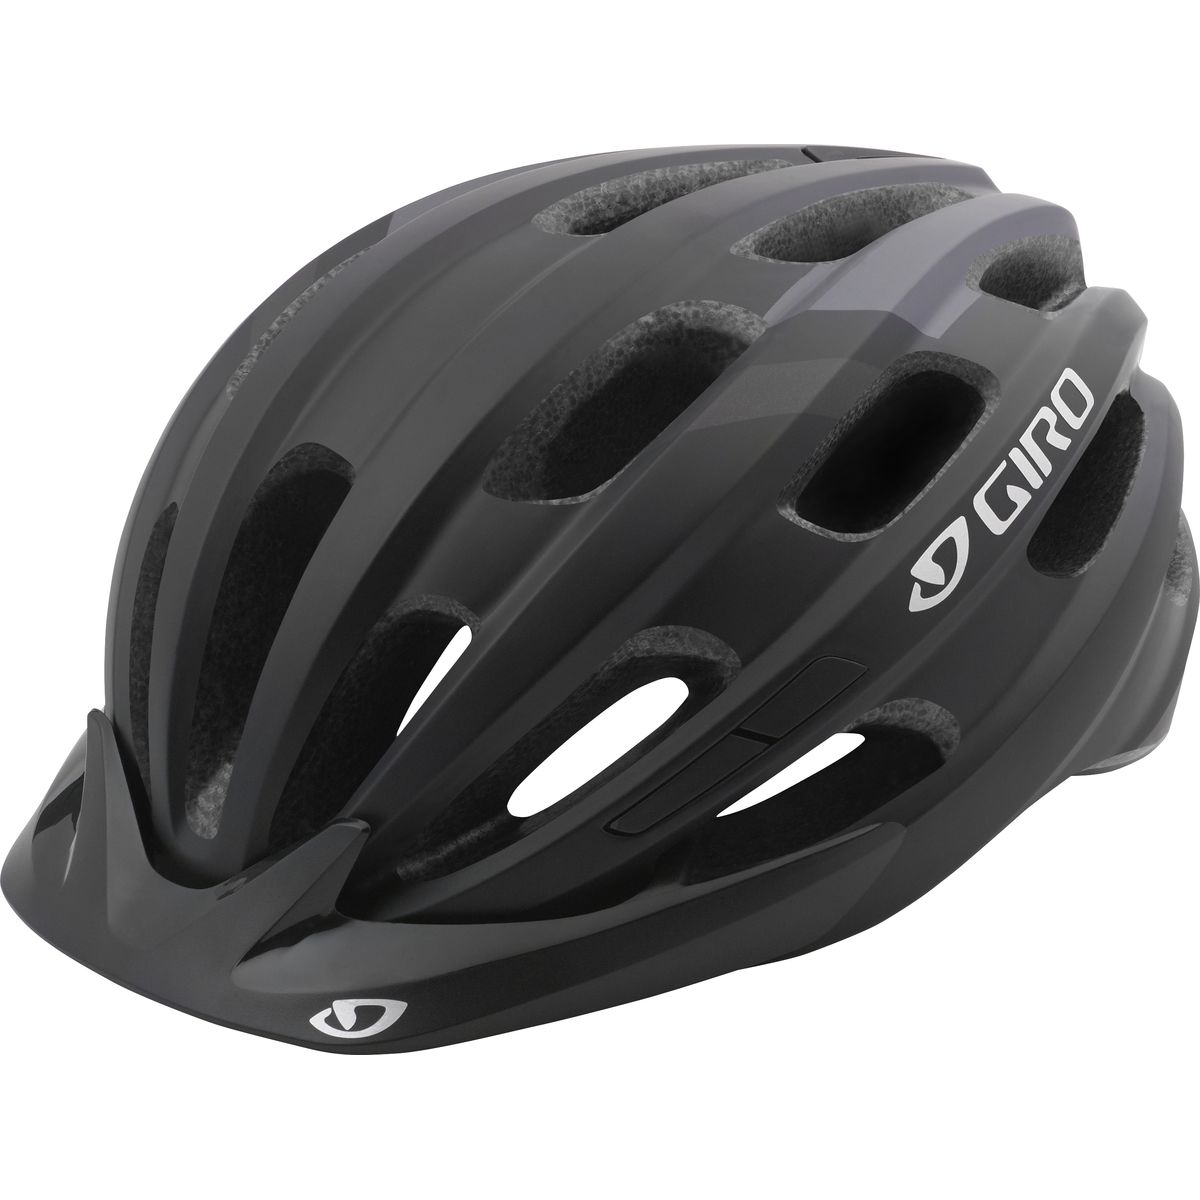 Giro Register Mips Helmet Matte Black, One Size